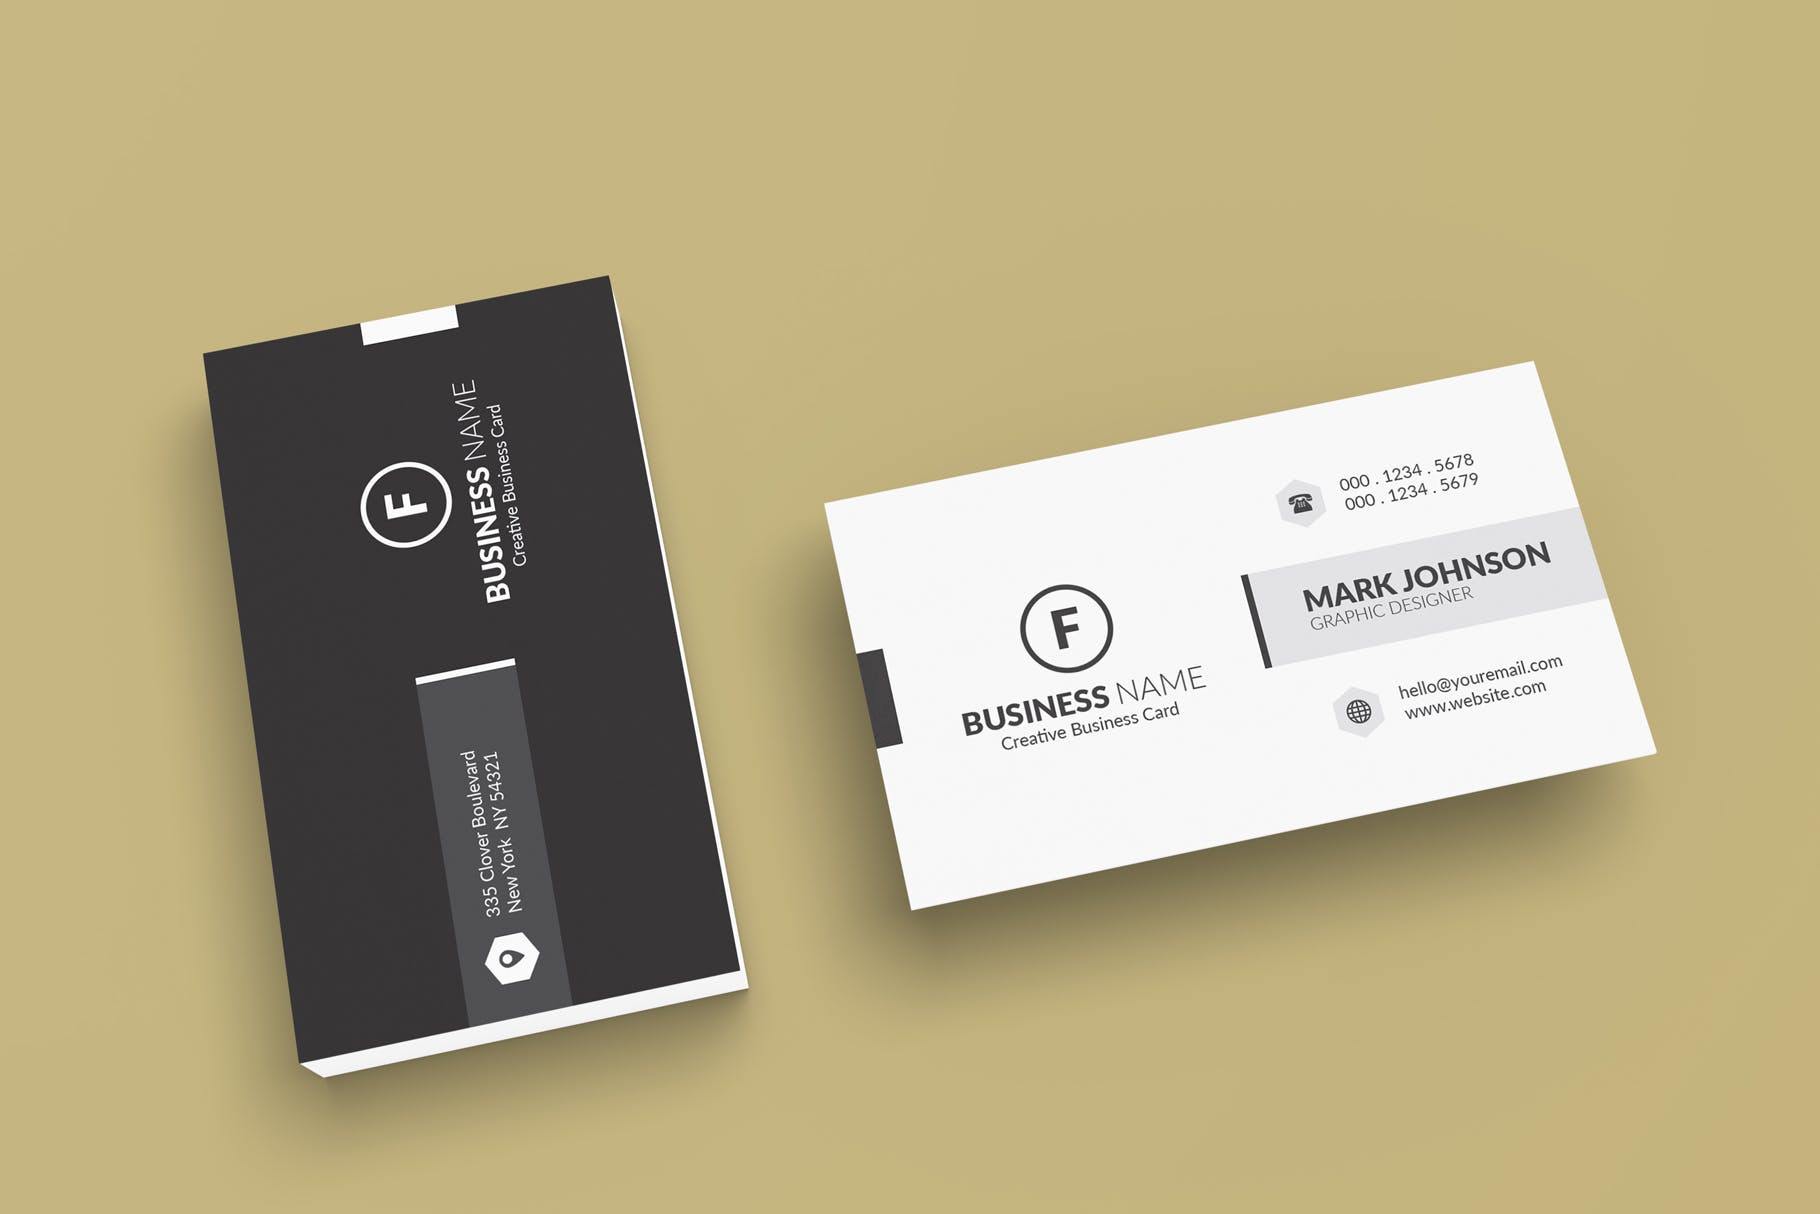 极简设计风格名片设计效果图普贤居精选 Minimalist Business Cards Mockup插图(3)